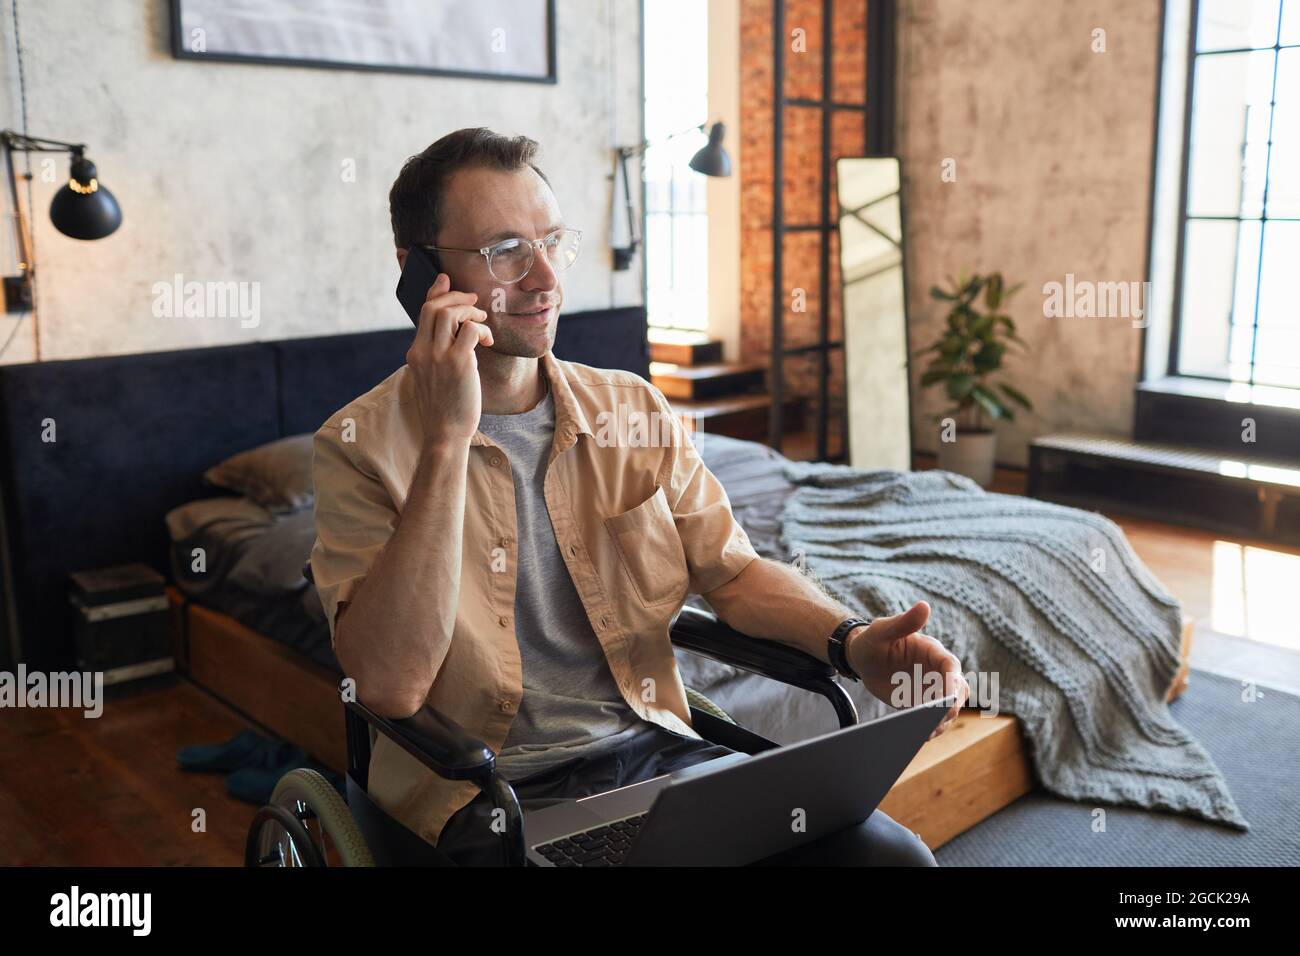 Portrait d'un homme adulte moderne avec un handicap parlant au smartphone tout en travaillant de la maison dans un intérieur design, espace de copie Banque D'Images